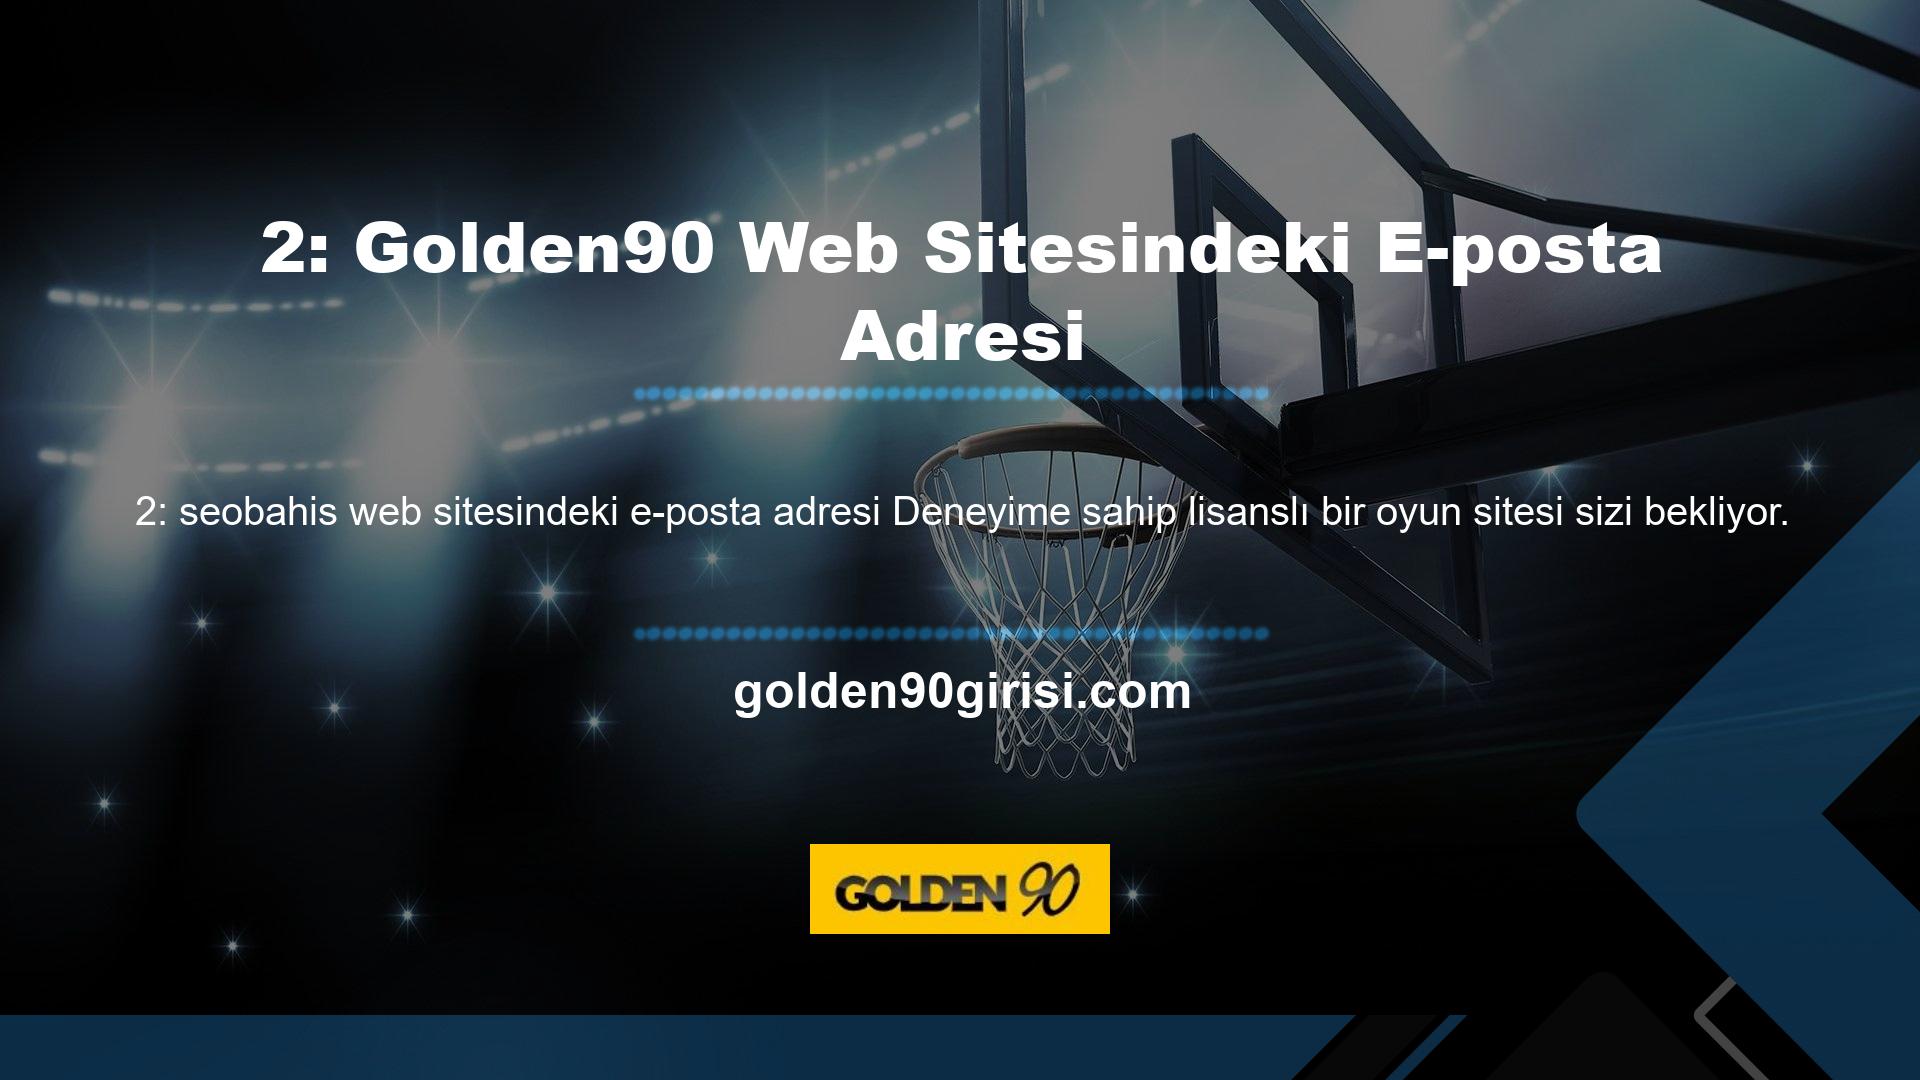 Yukarıda belirtildiği gibi, Golden90 kaydolmak, hesabınıza para yatırmak için çeşitli ödeme yöntemleri arasından seçim yapmak hızlı ve kolaydır